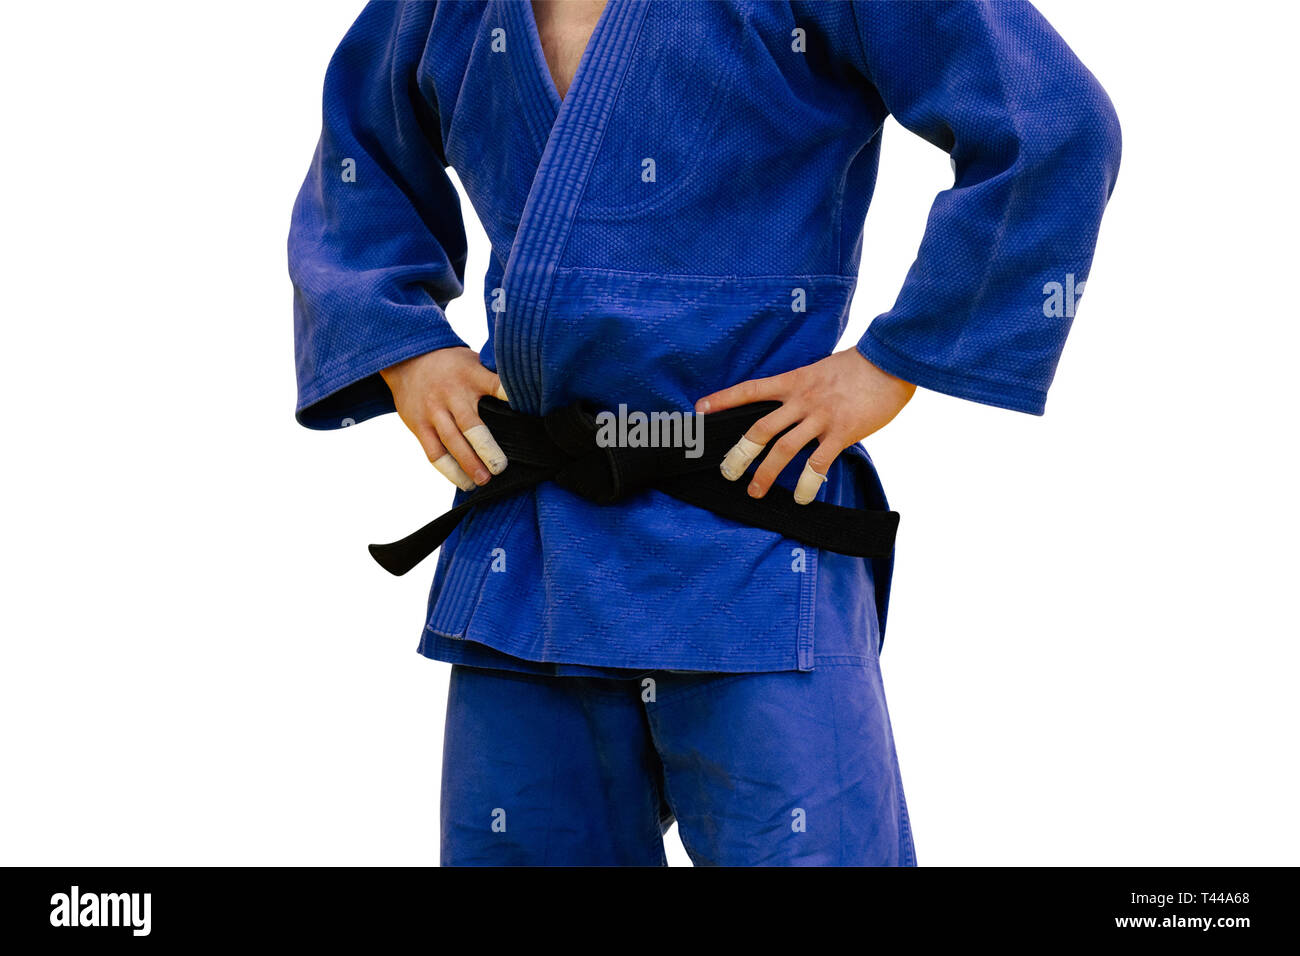 Un athlète de judo isolés en kimono bleu et ceinture noire Photo Stock -  Alamy